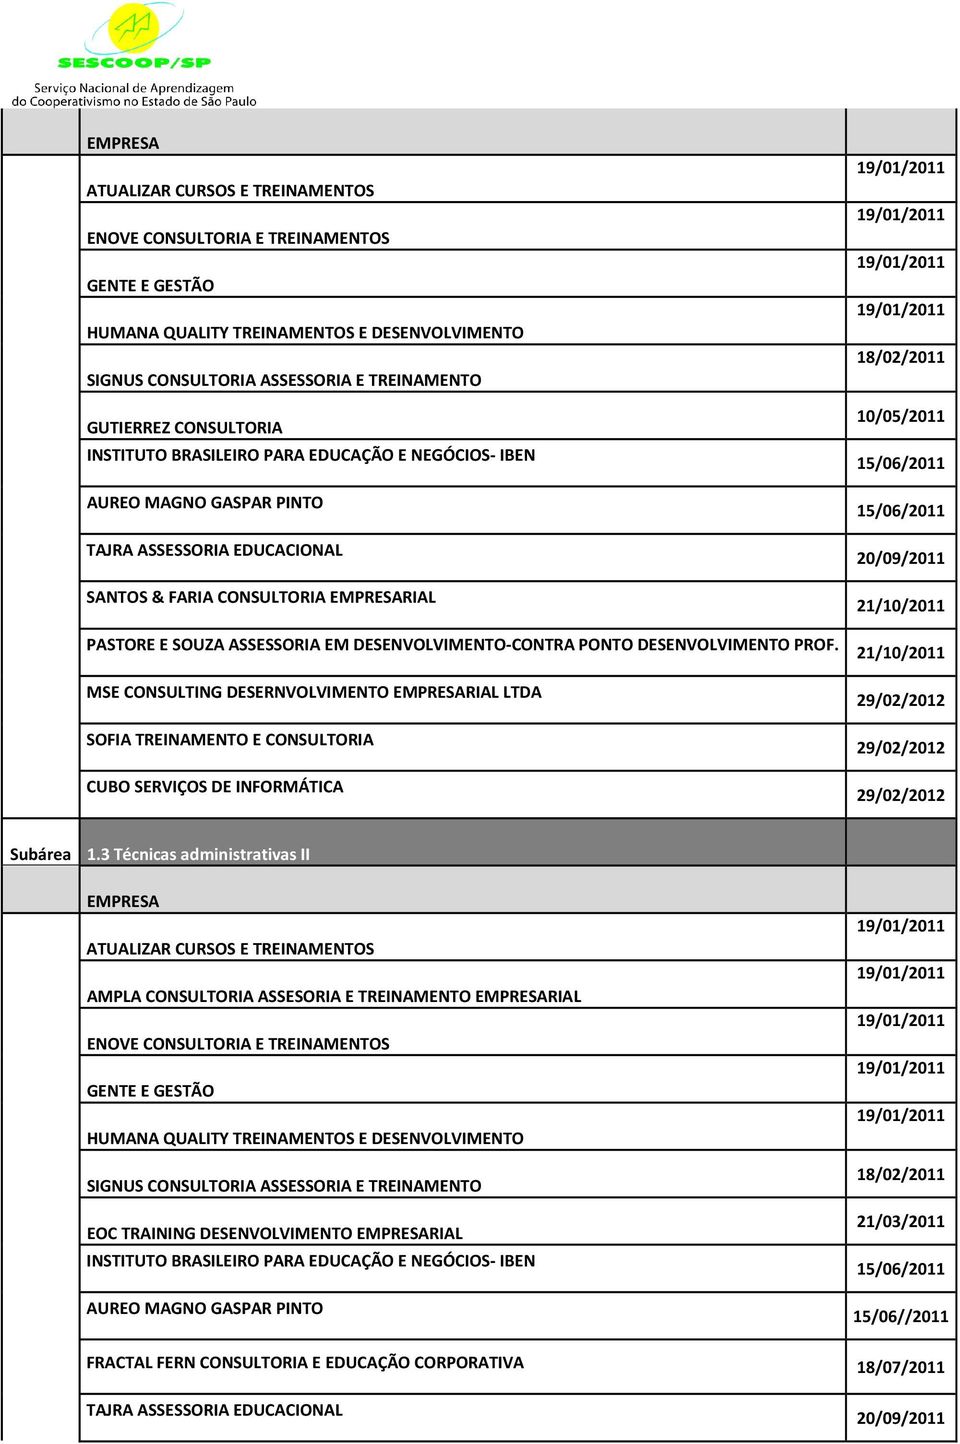 MSE CONSULTING DESERNVOLVIMENTO RIAL LTDA SOFIA TREINAMENTO E CONSULTORIA CUBO SERVIÇOS DE INFORMÁTICA 15/06/2011 15/06/2011 20/09/2011 Subárea 1.